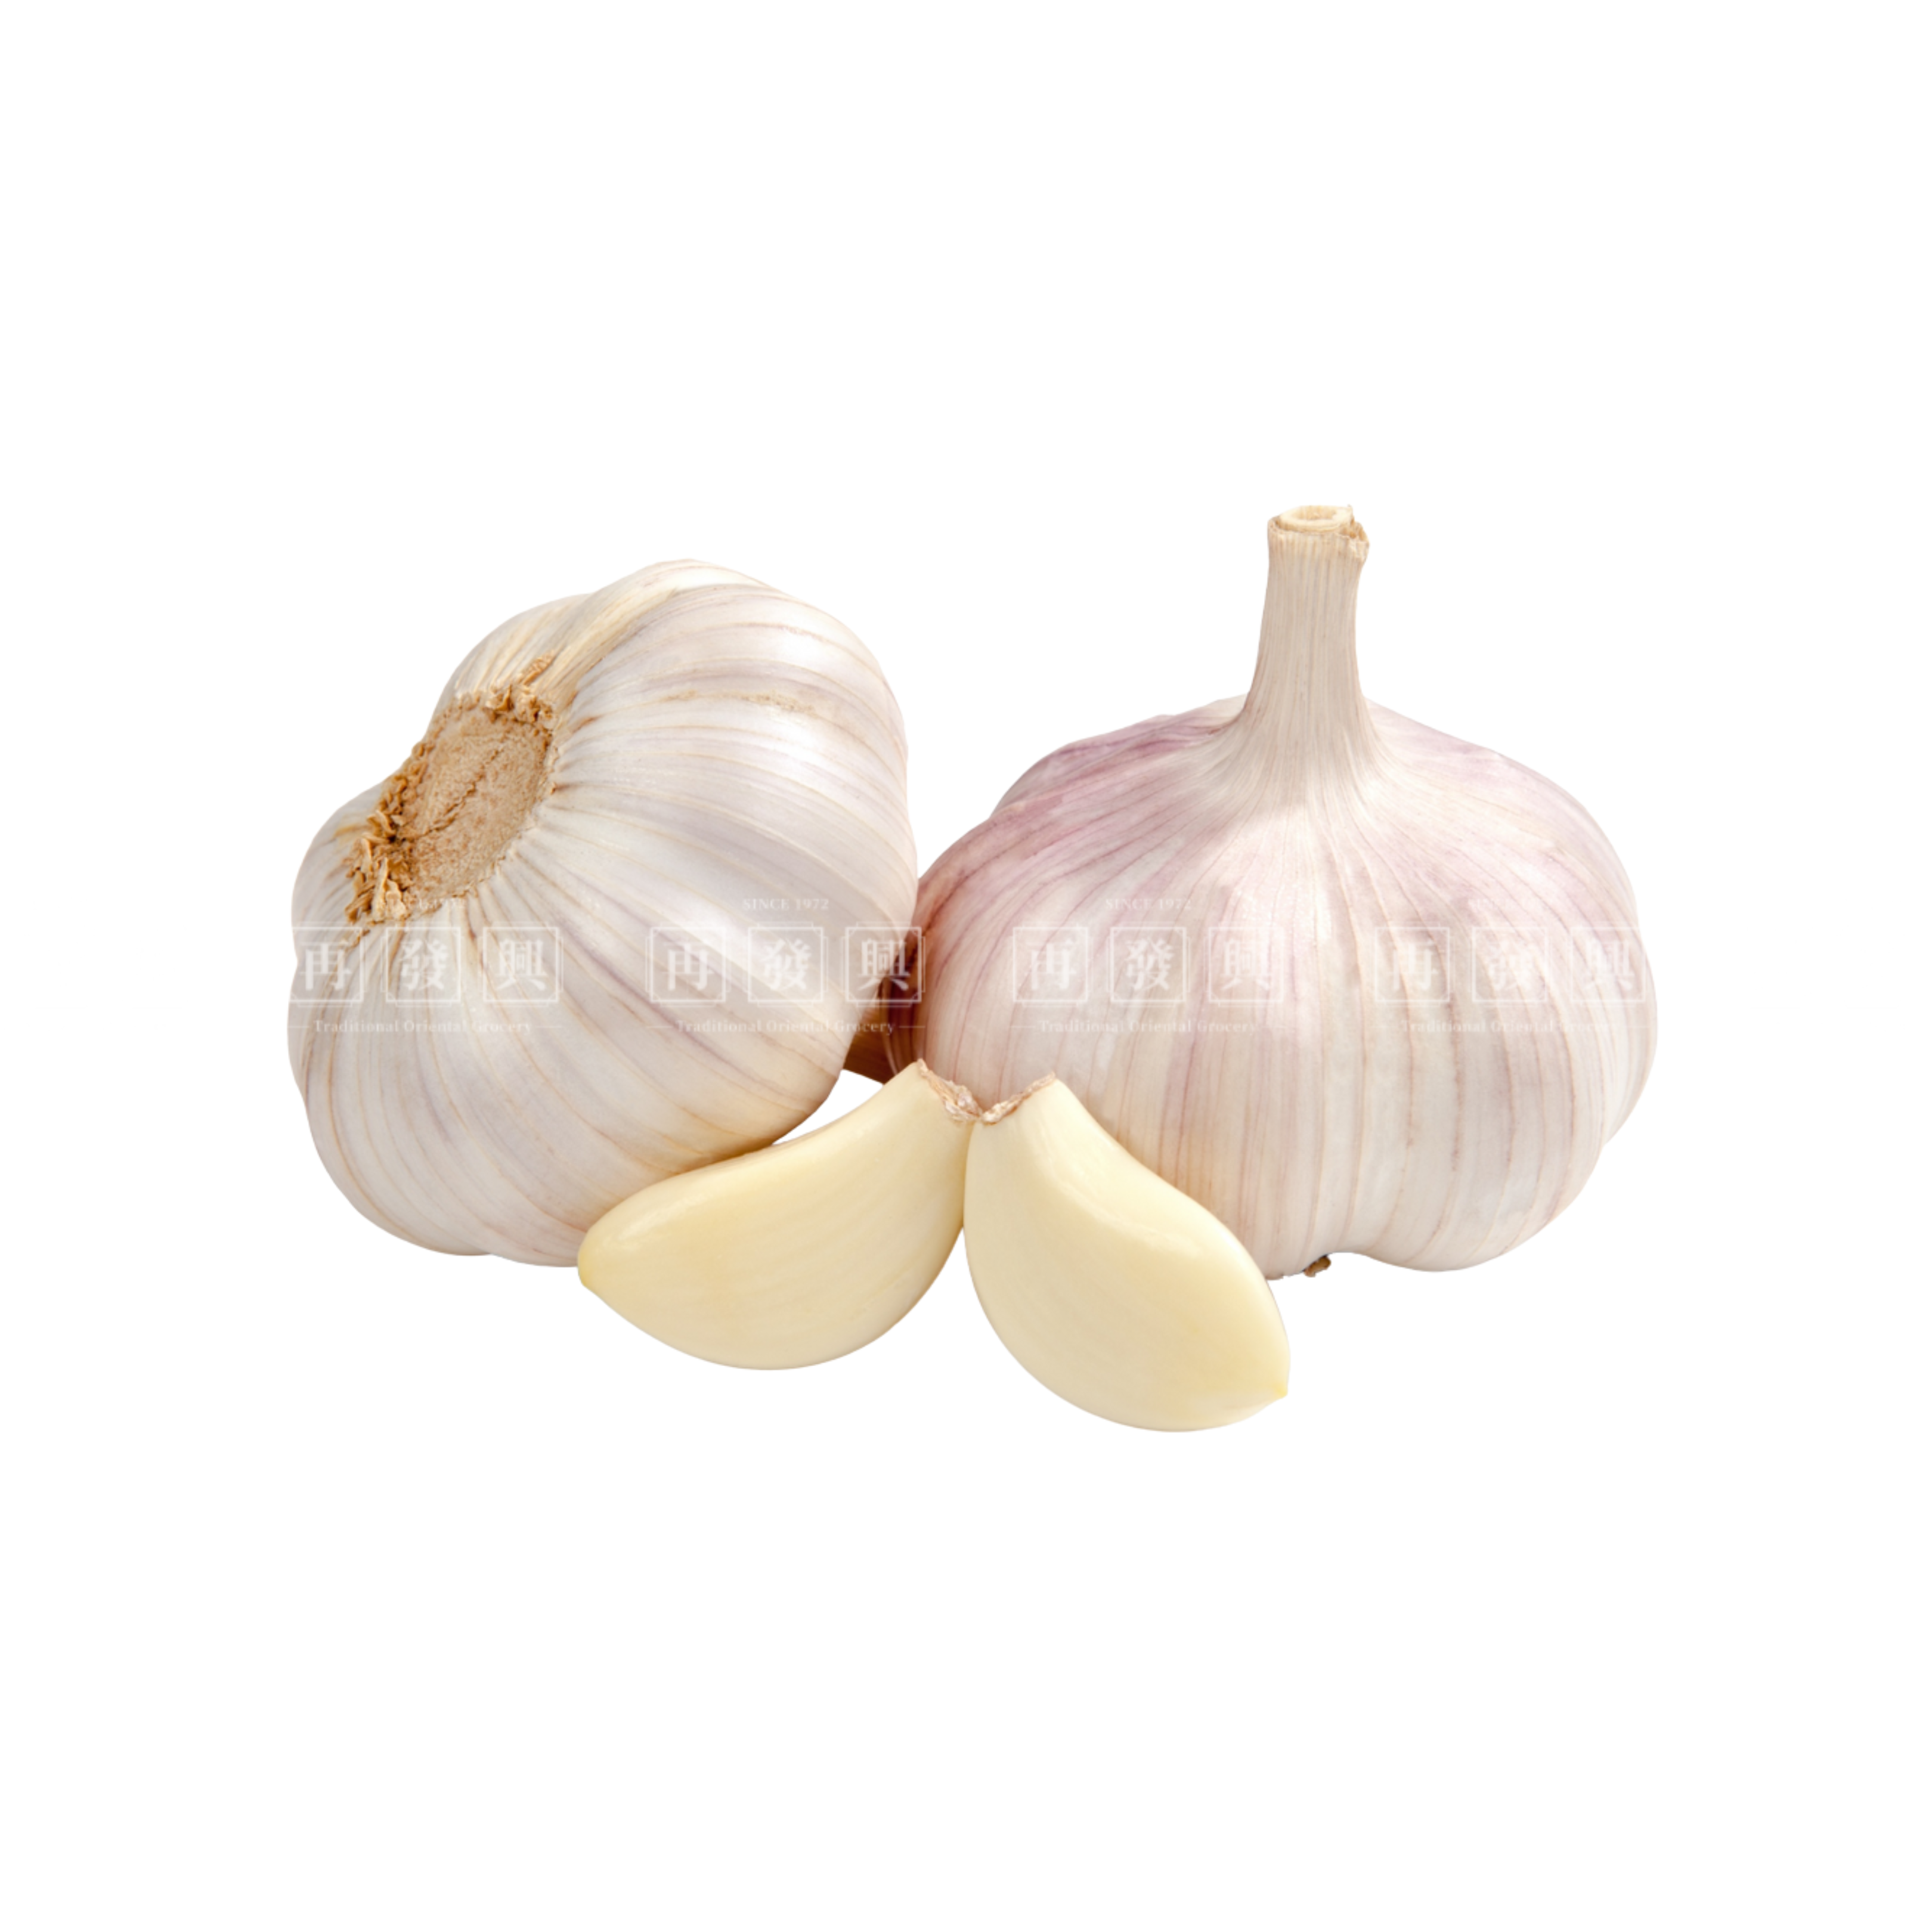 Garlic 500g (7-8pcs)